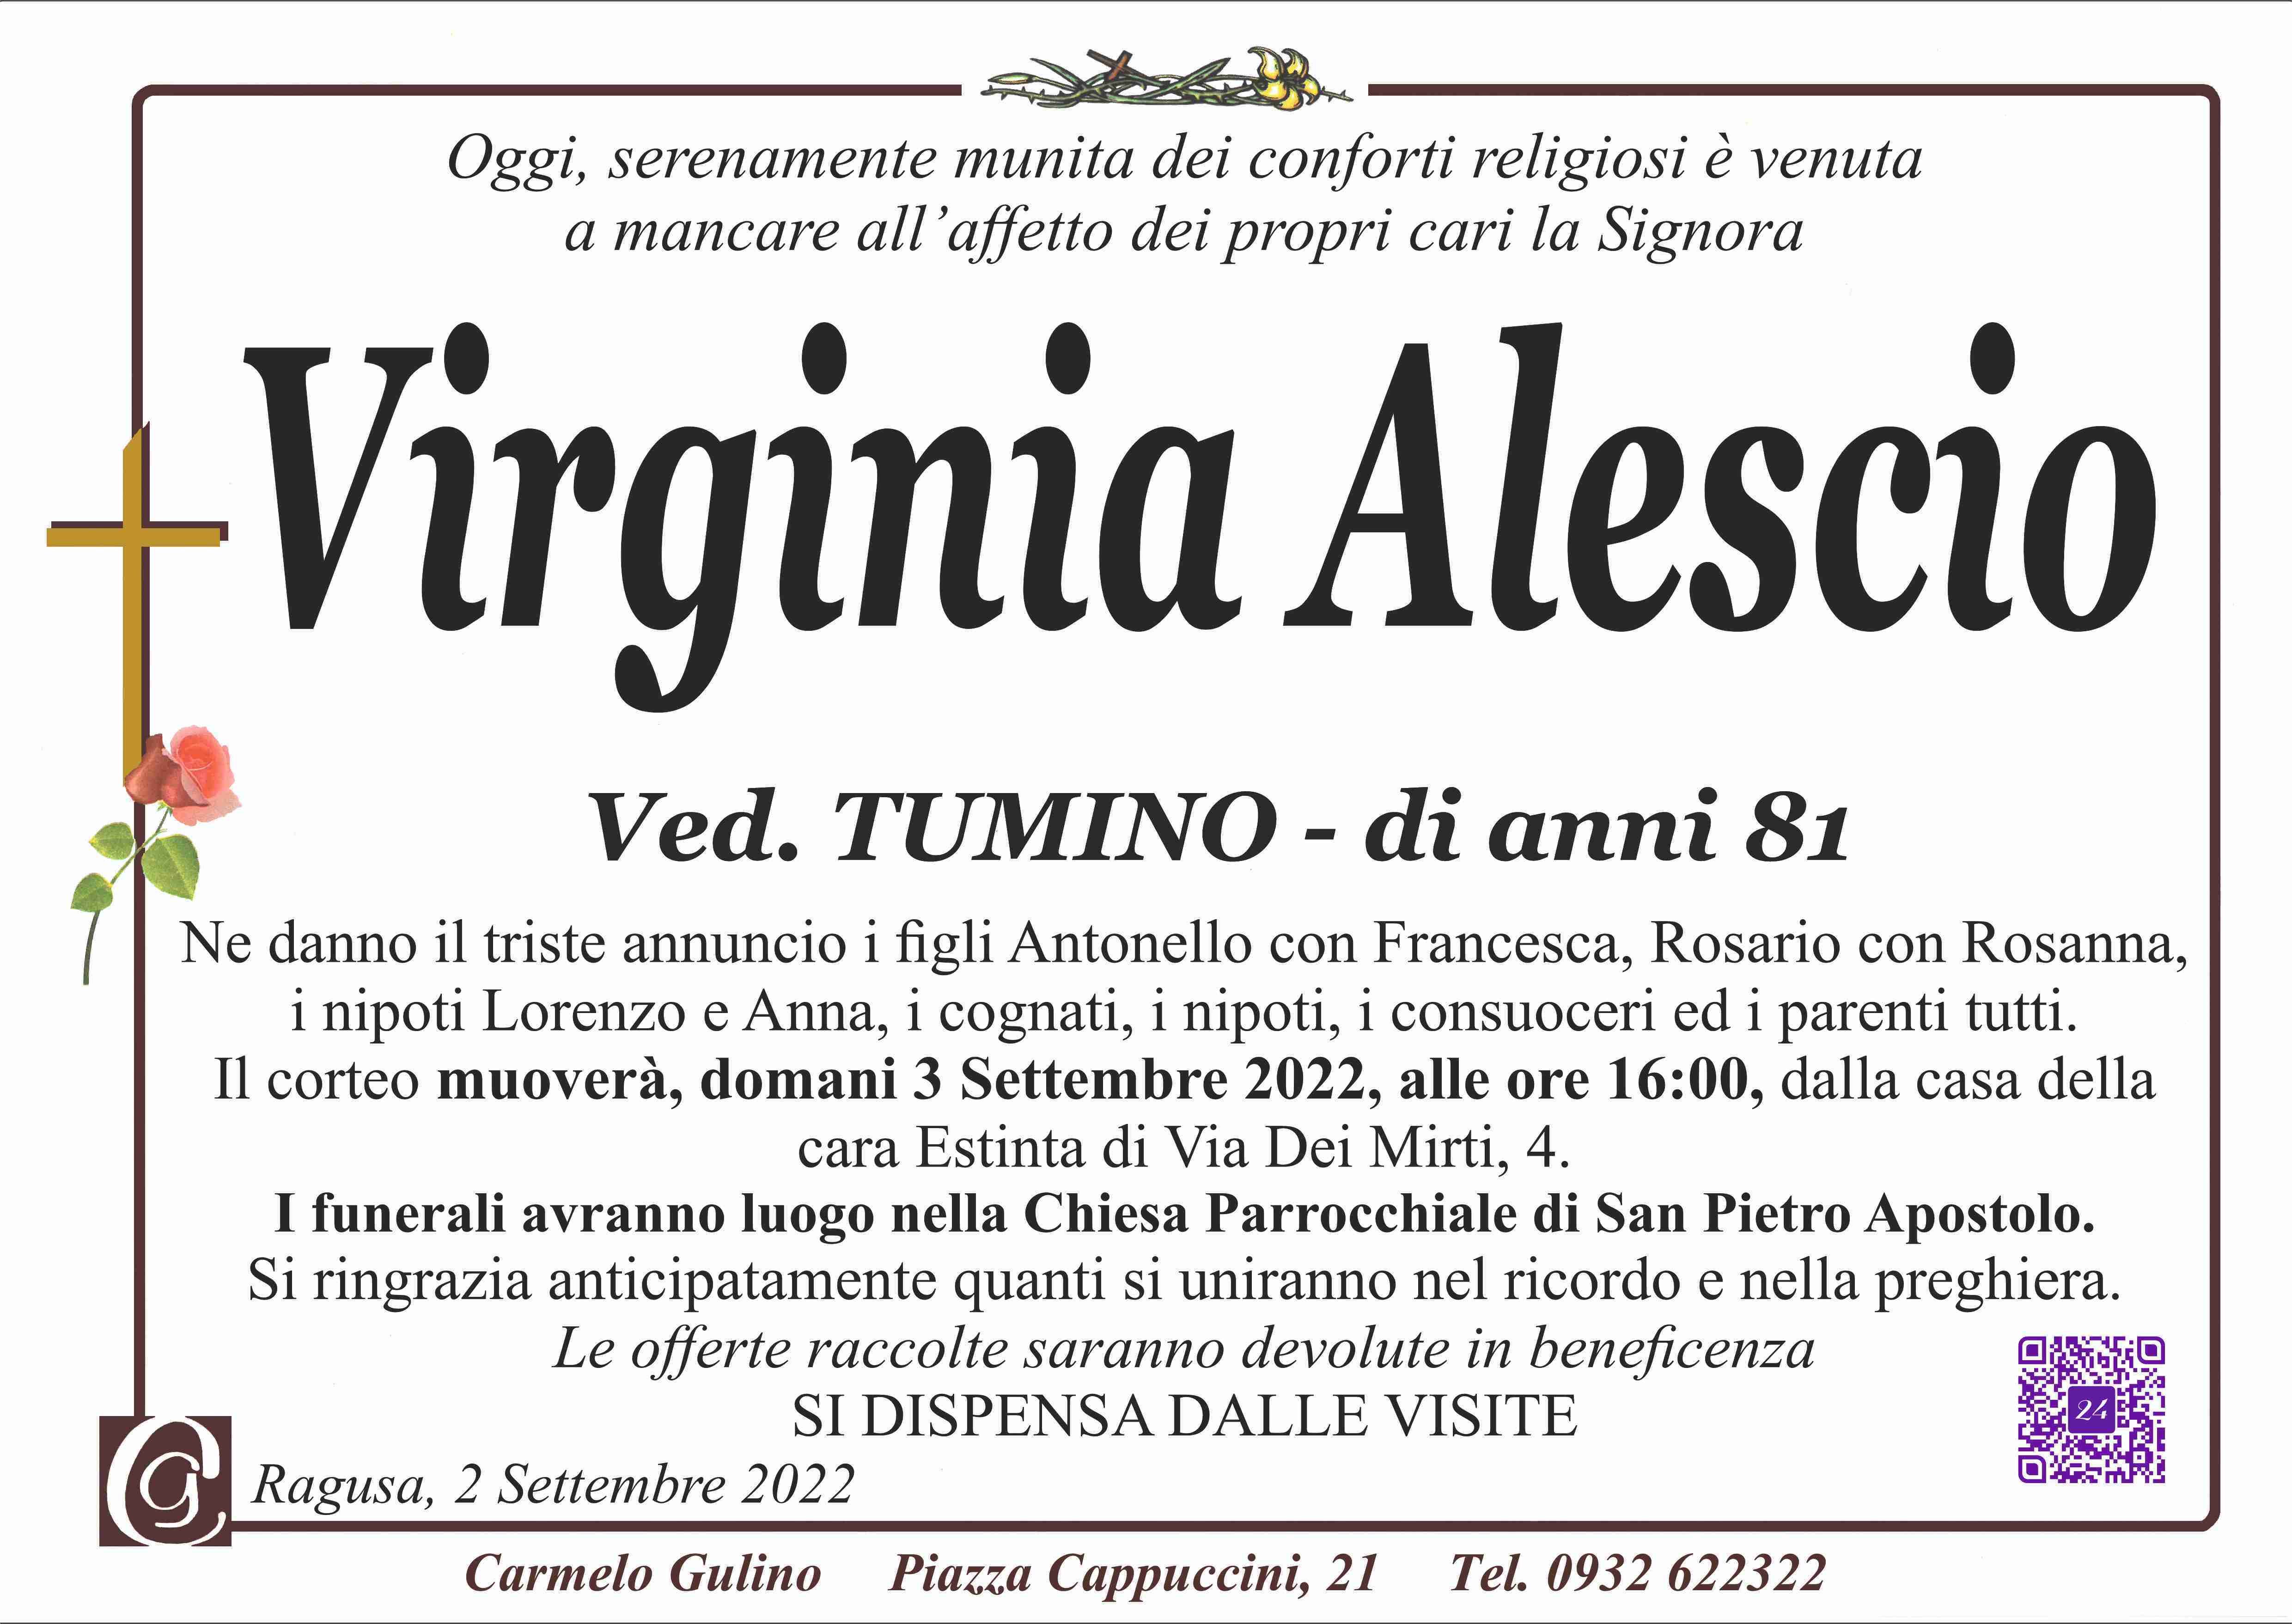 Virginia Alescio